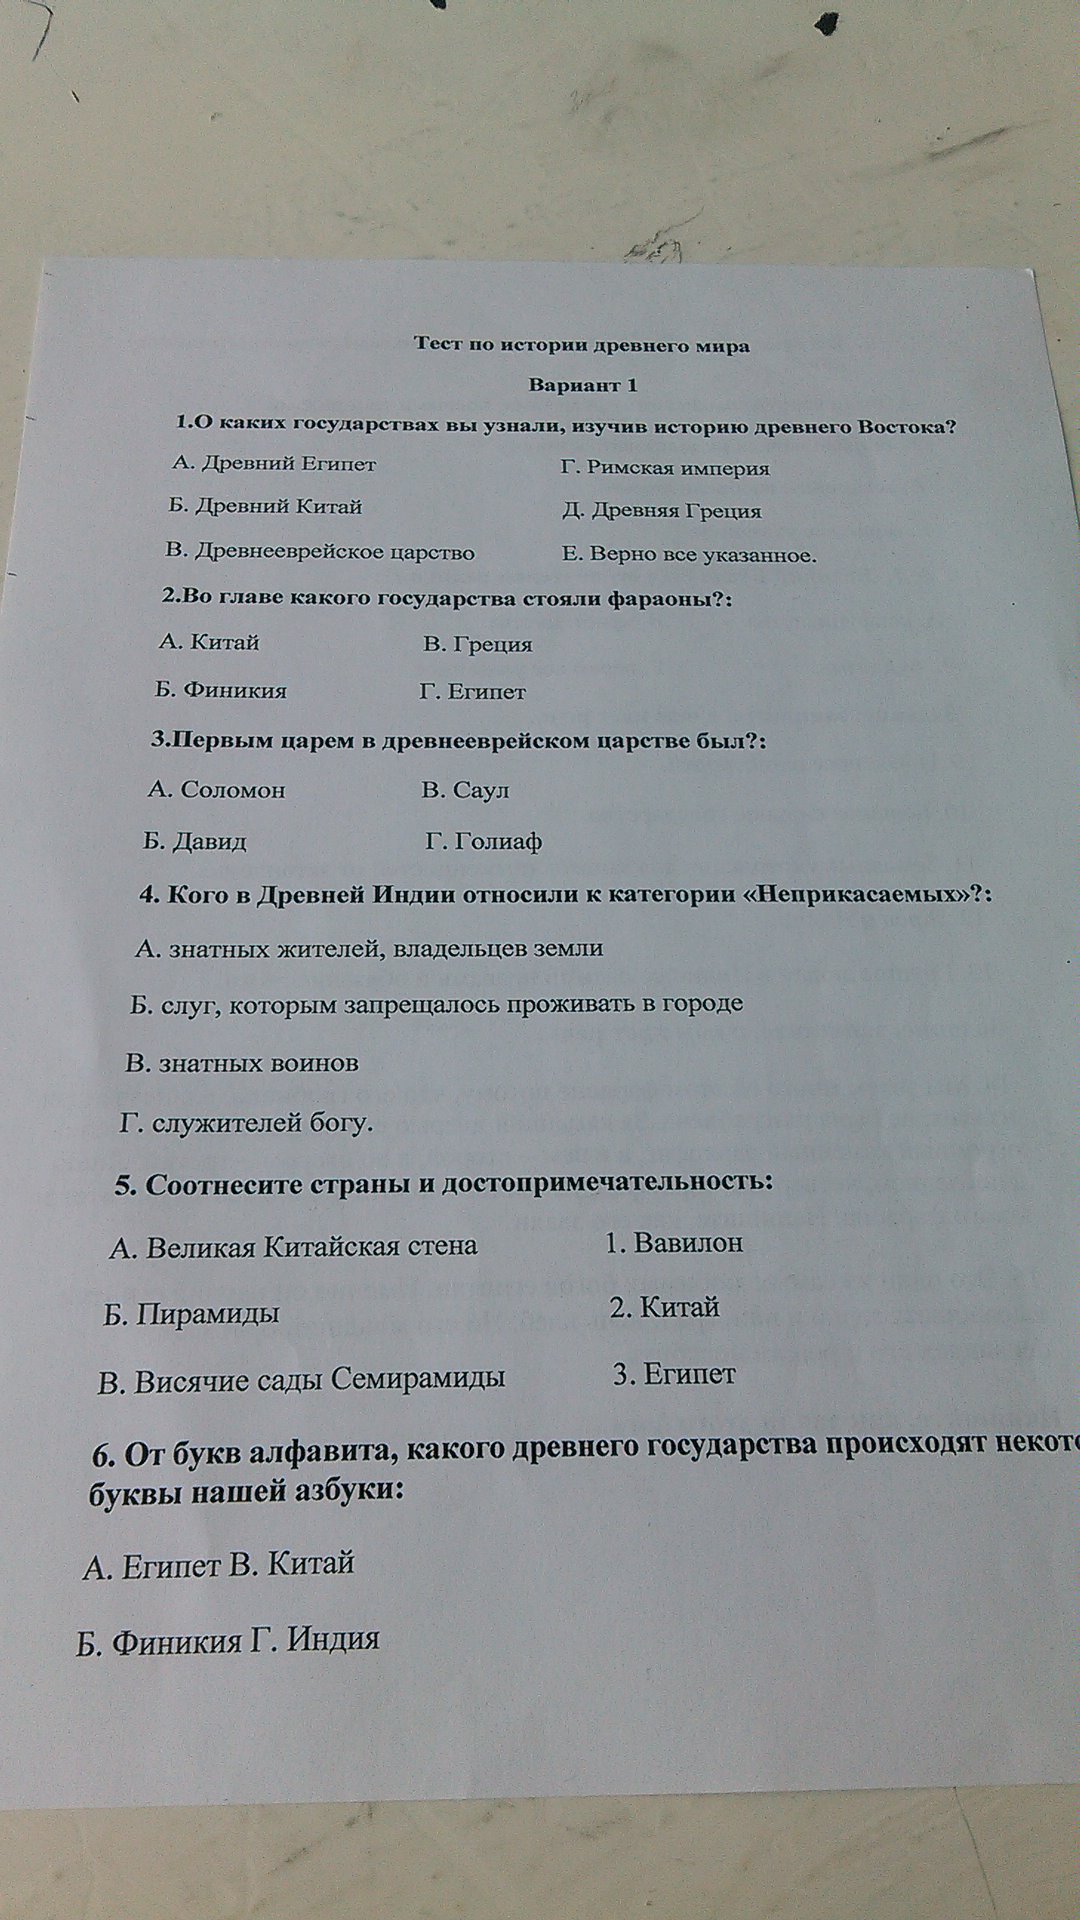 Тесты по истории советского союза